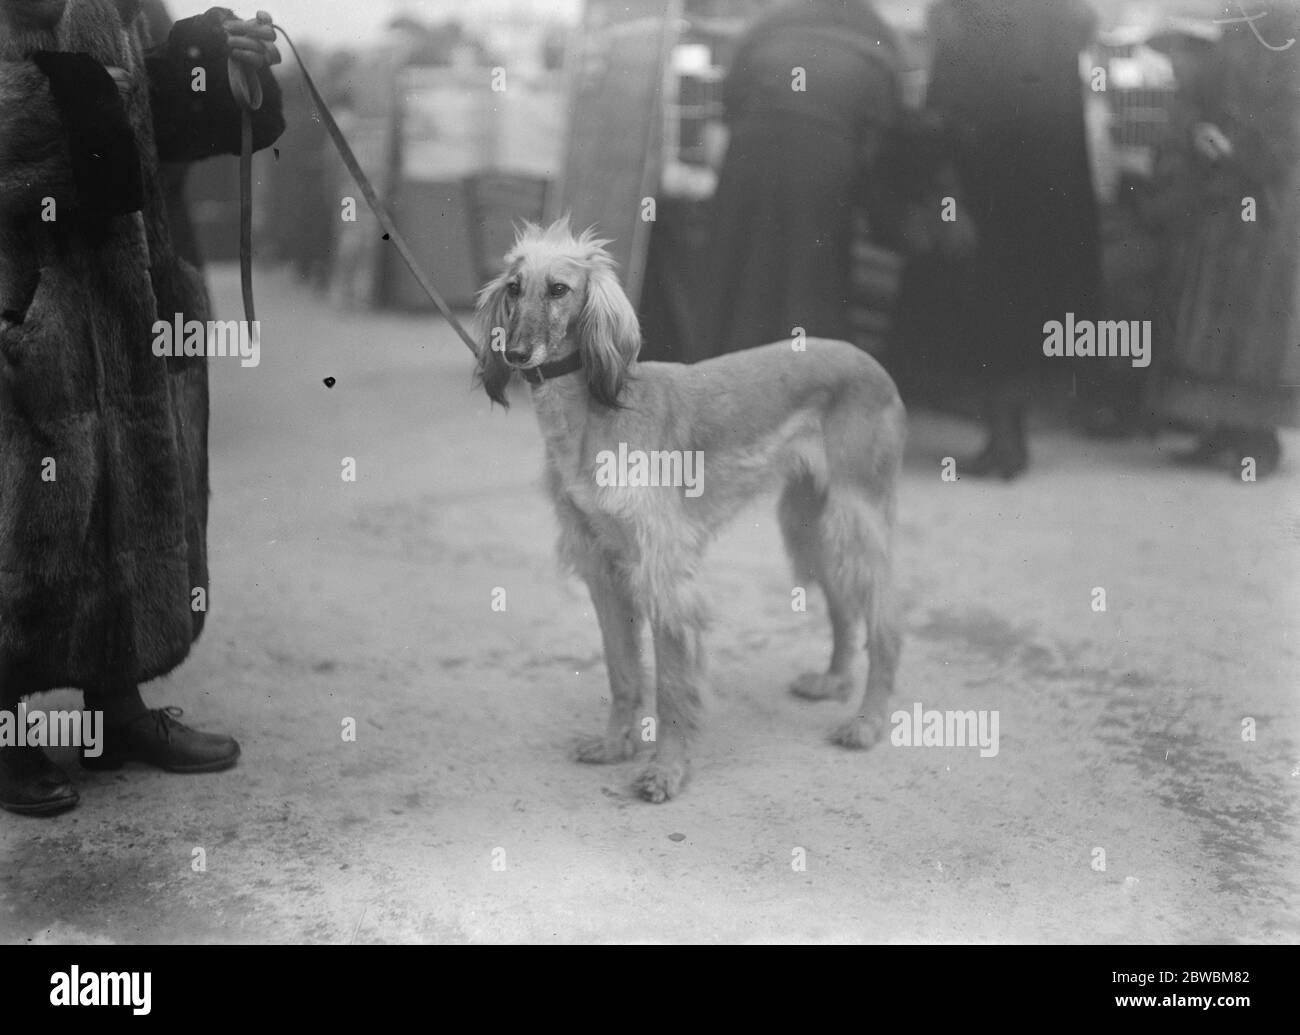 Einzigartig, aber traurig Berühmtheit bei der großen Hundeausstellung.  Trauernde und einsame Afghane Hound trauert um seinen Mangel an Stammbaum.  Dieser afghanische Hund wurde von Major J Bell Murray nach England  gebracht. Es